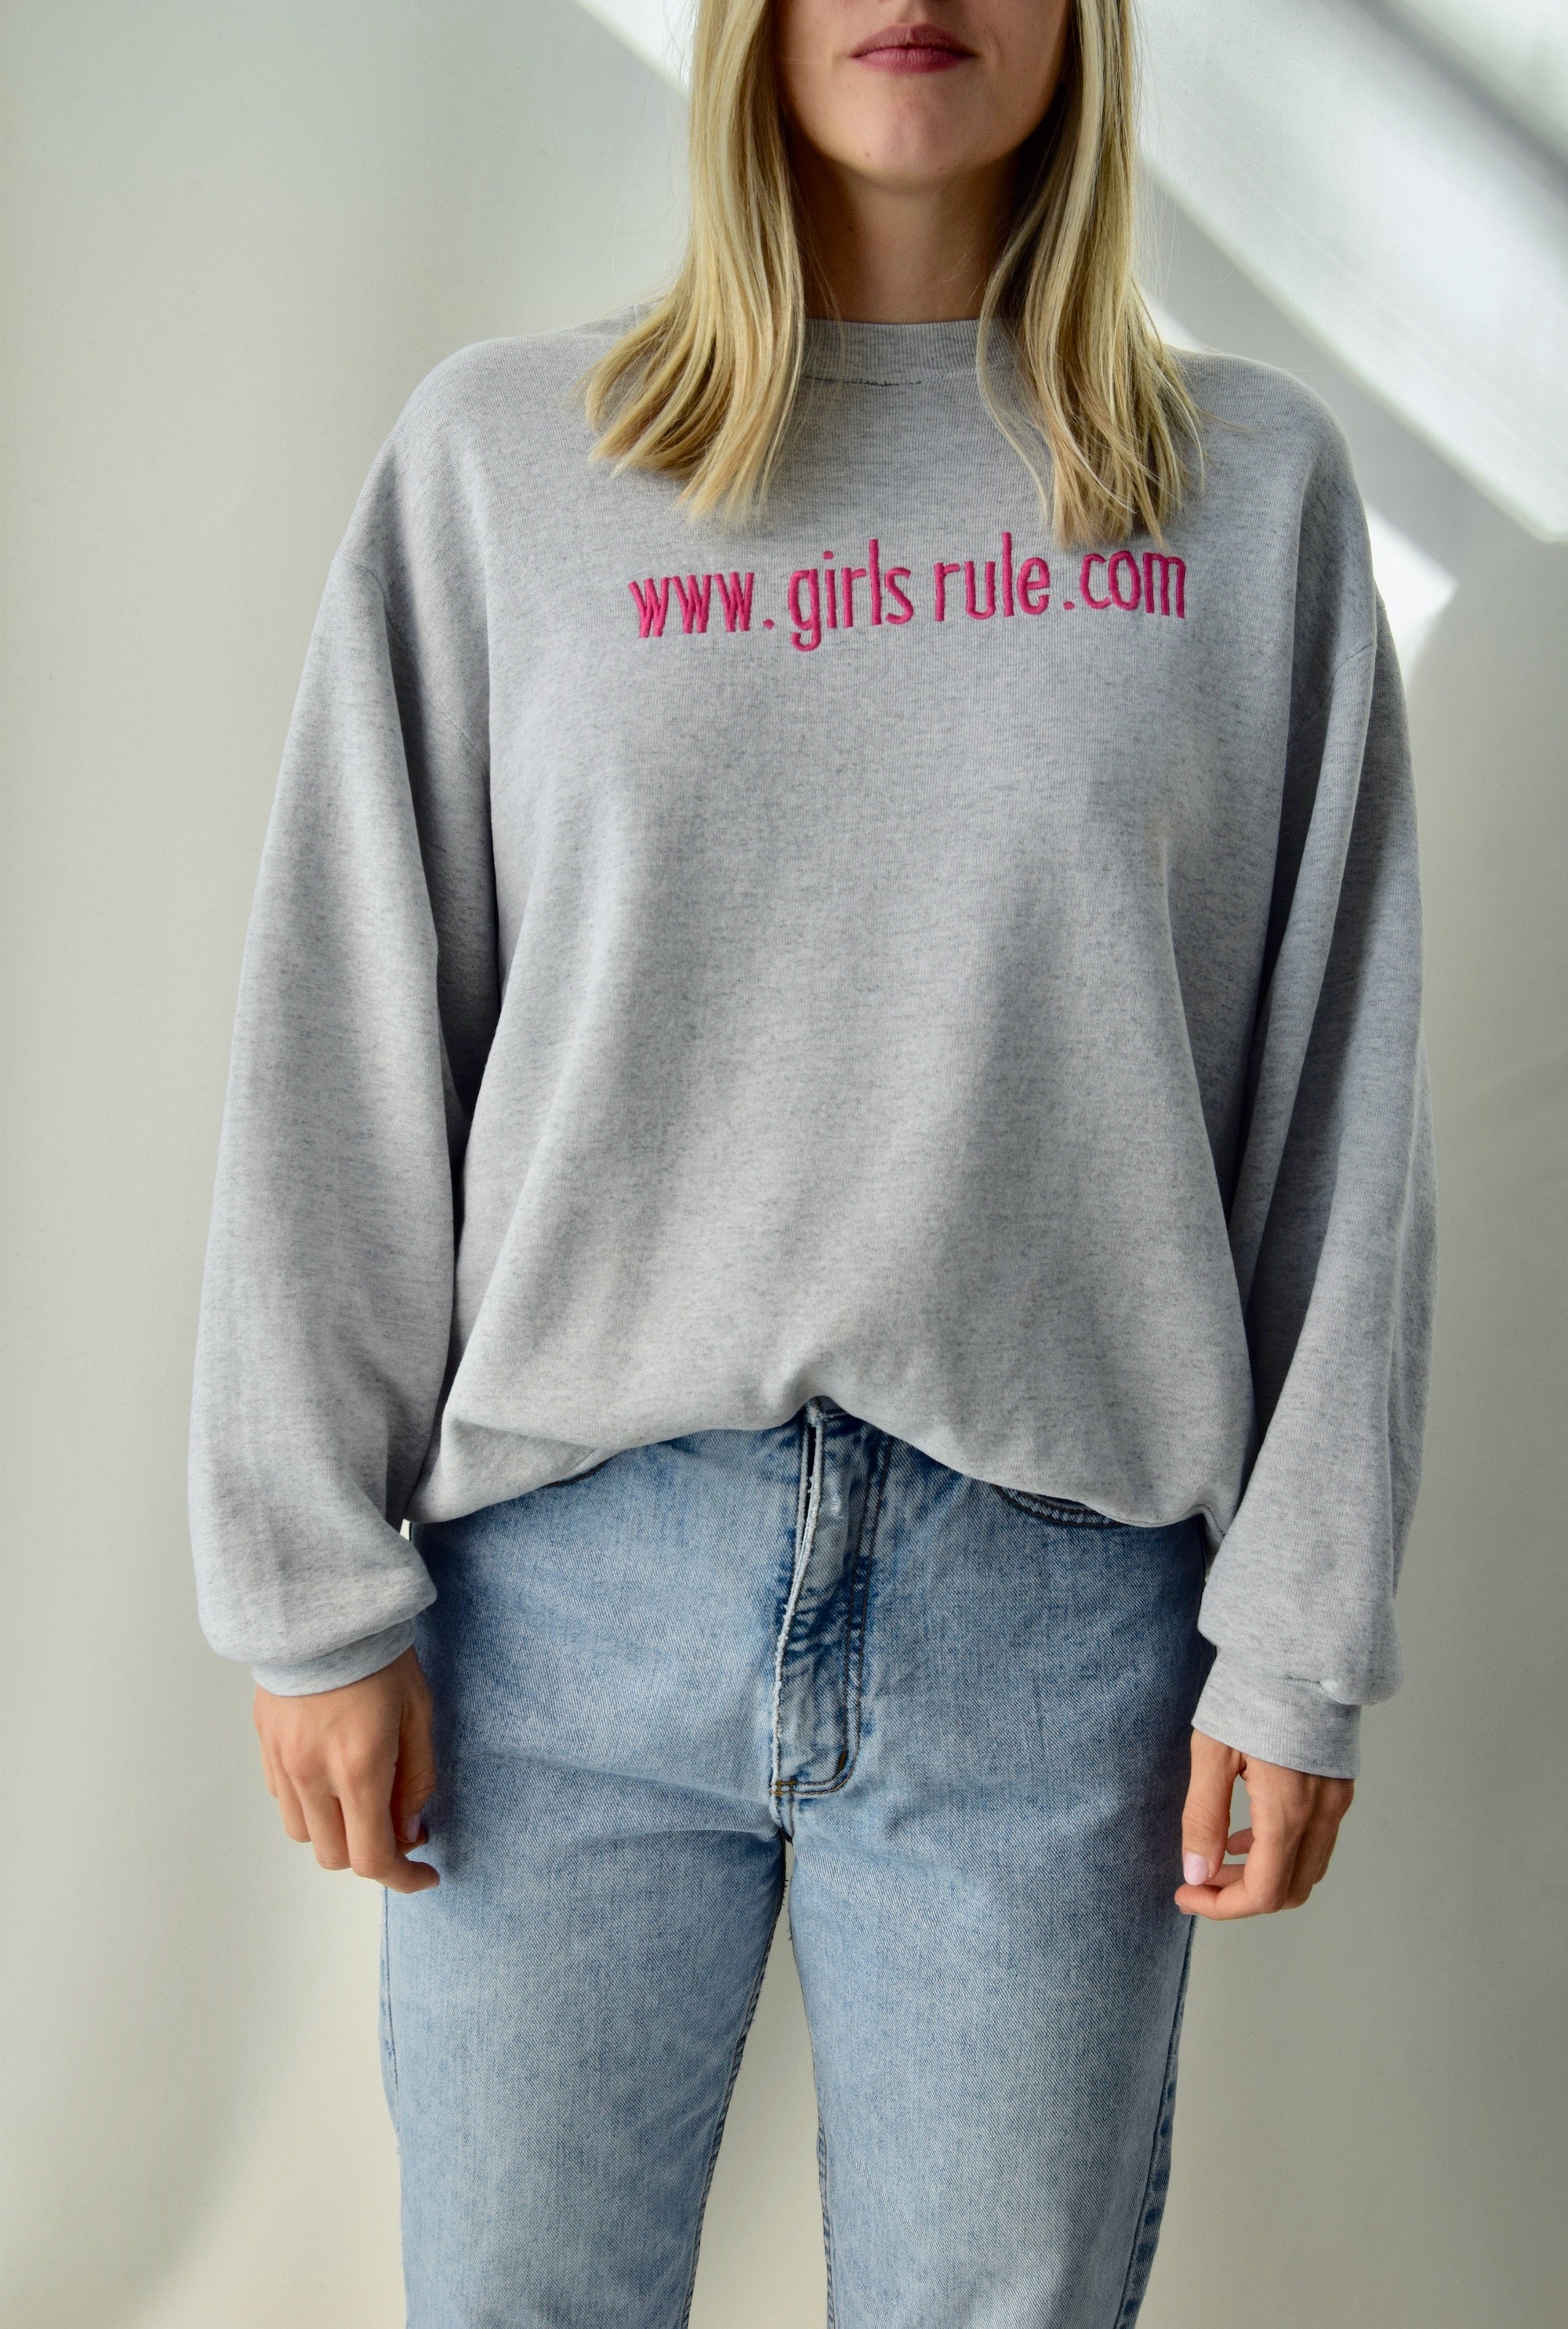 www.girlsrule.com Sweatshirt